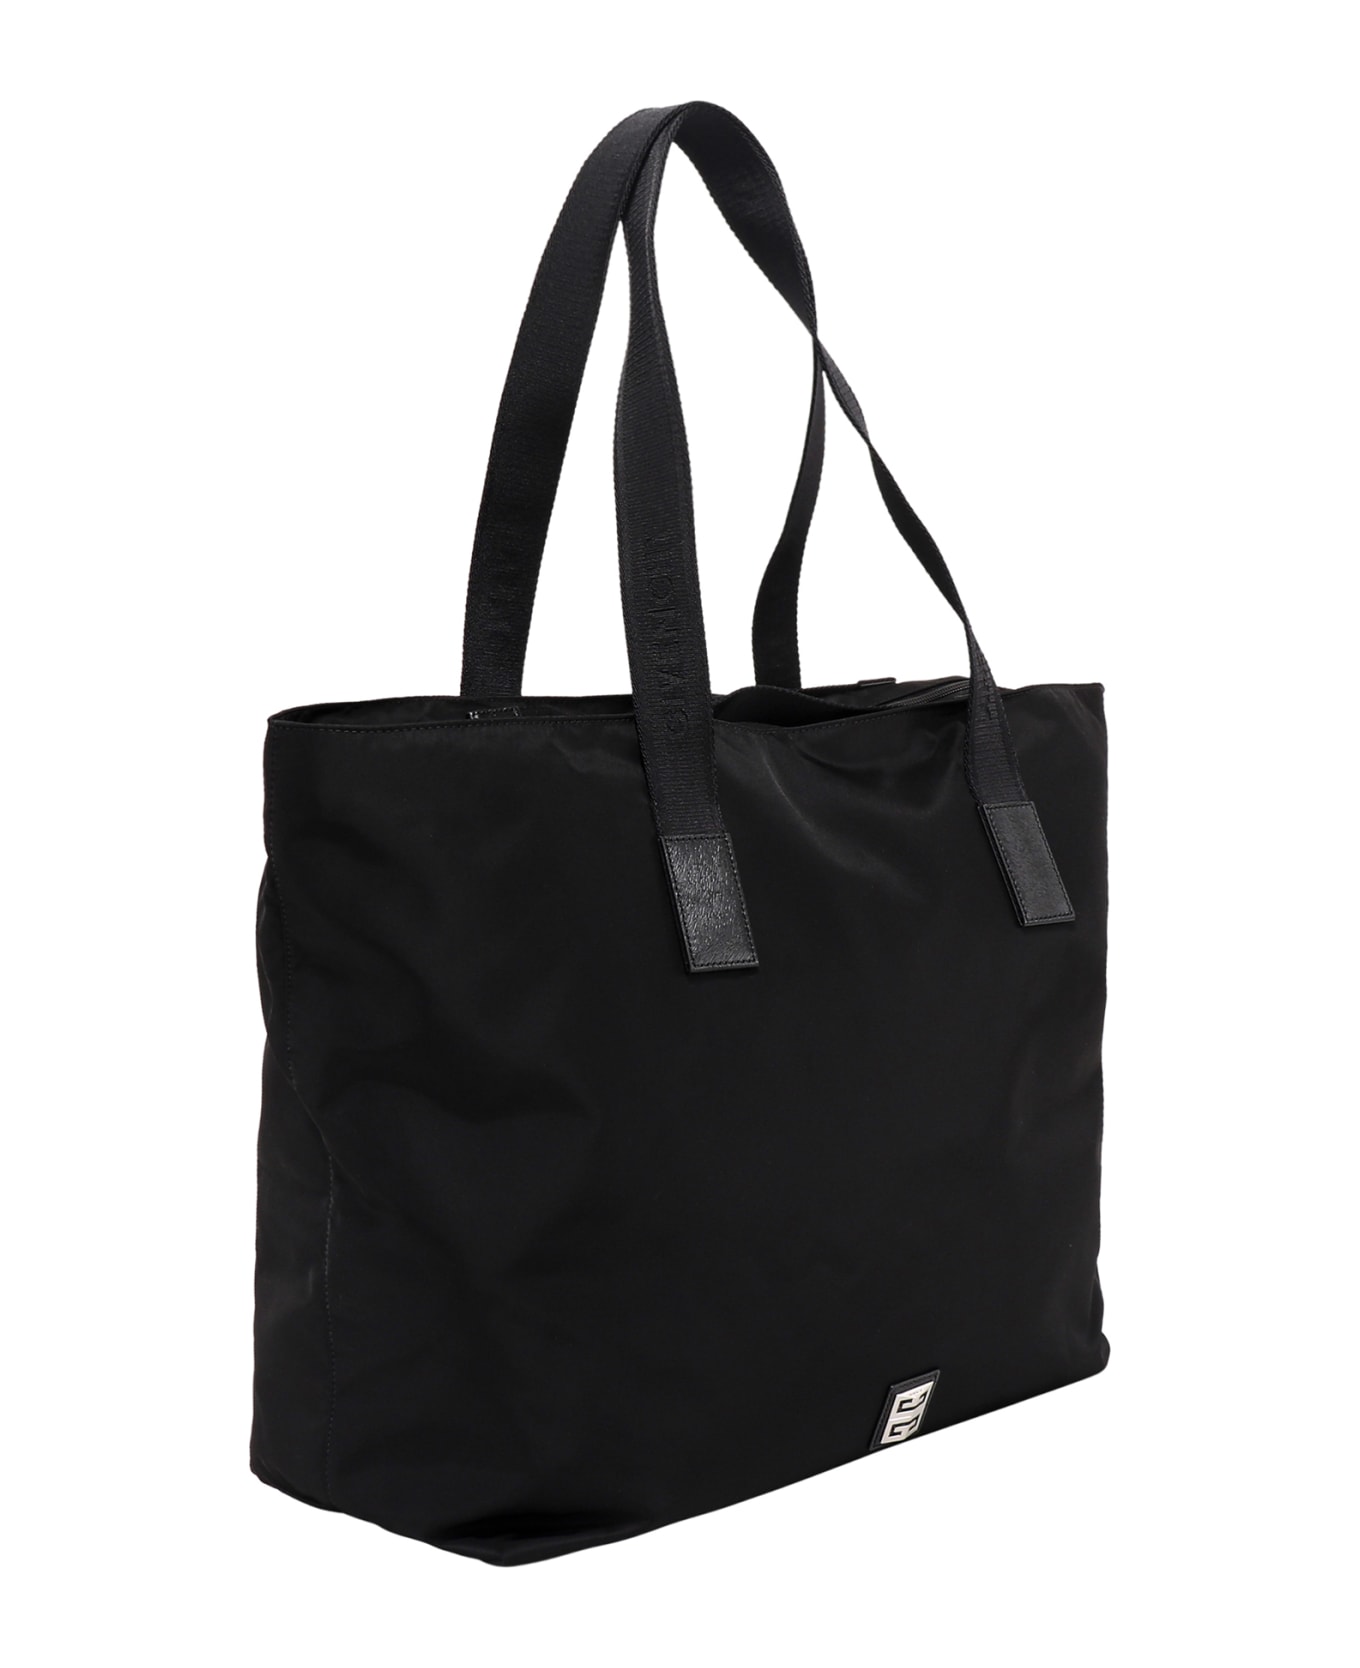 Givenchy 4g Light Shoulder Bag - Black